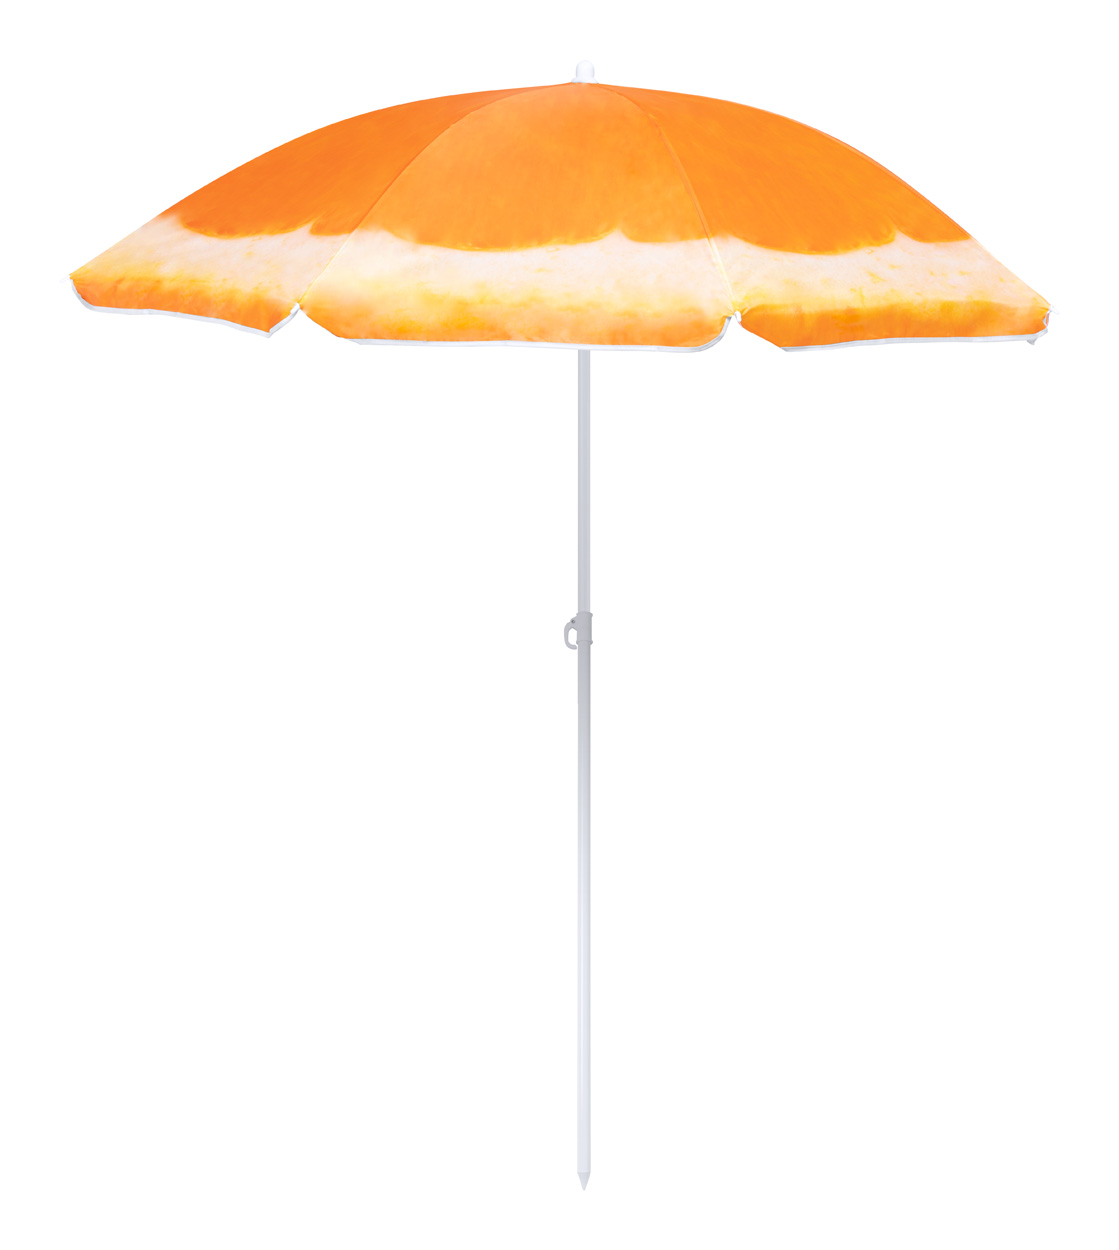 Chaptan beach umbrella, orange